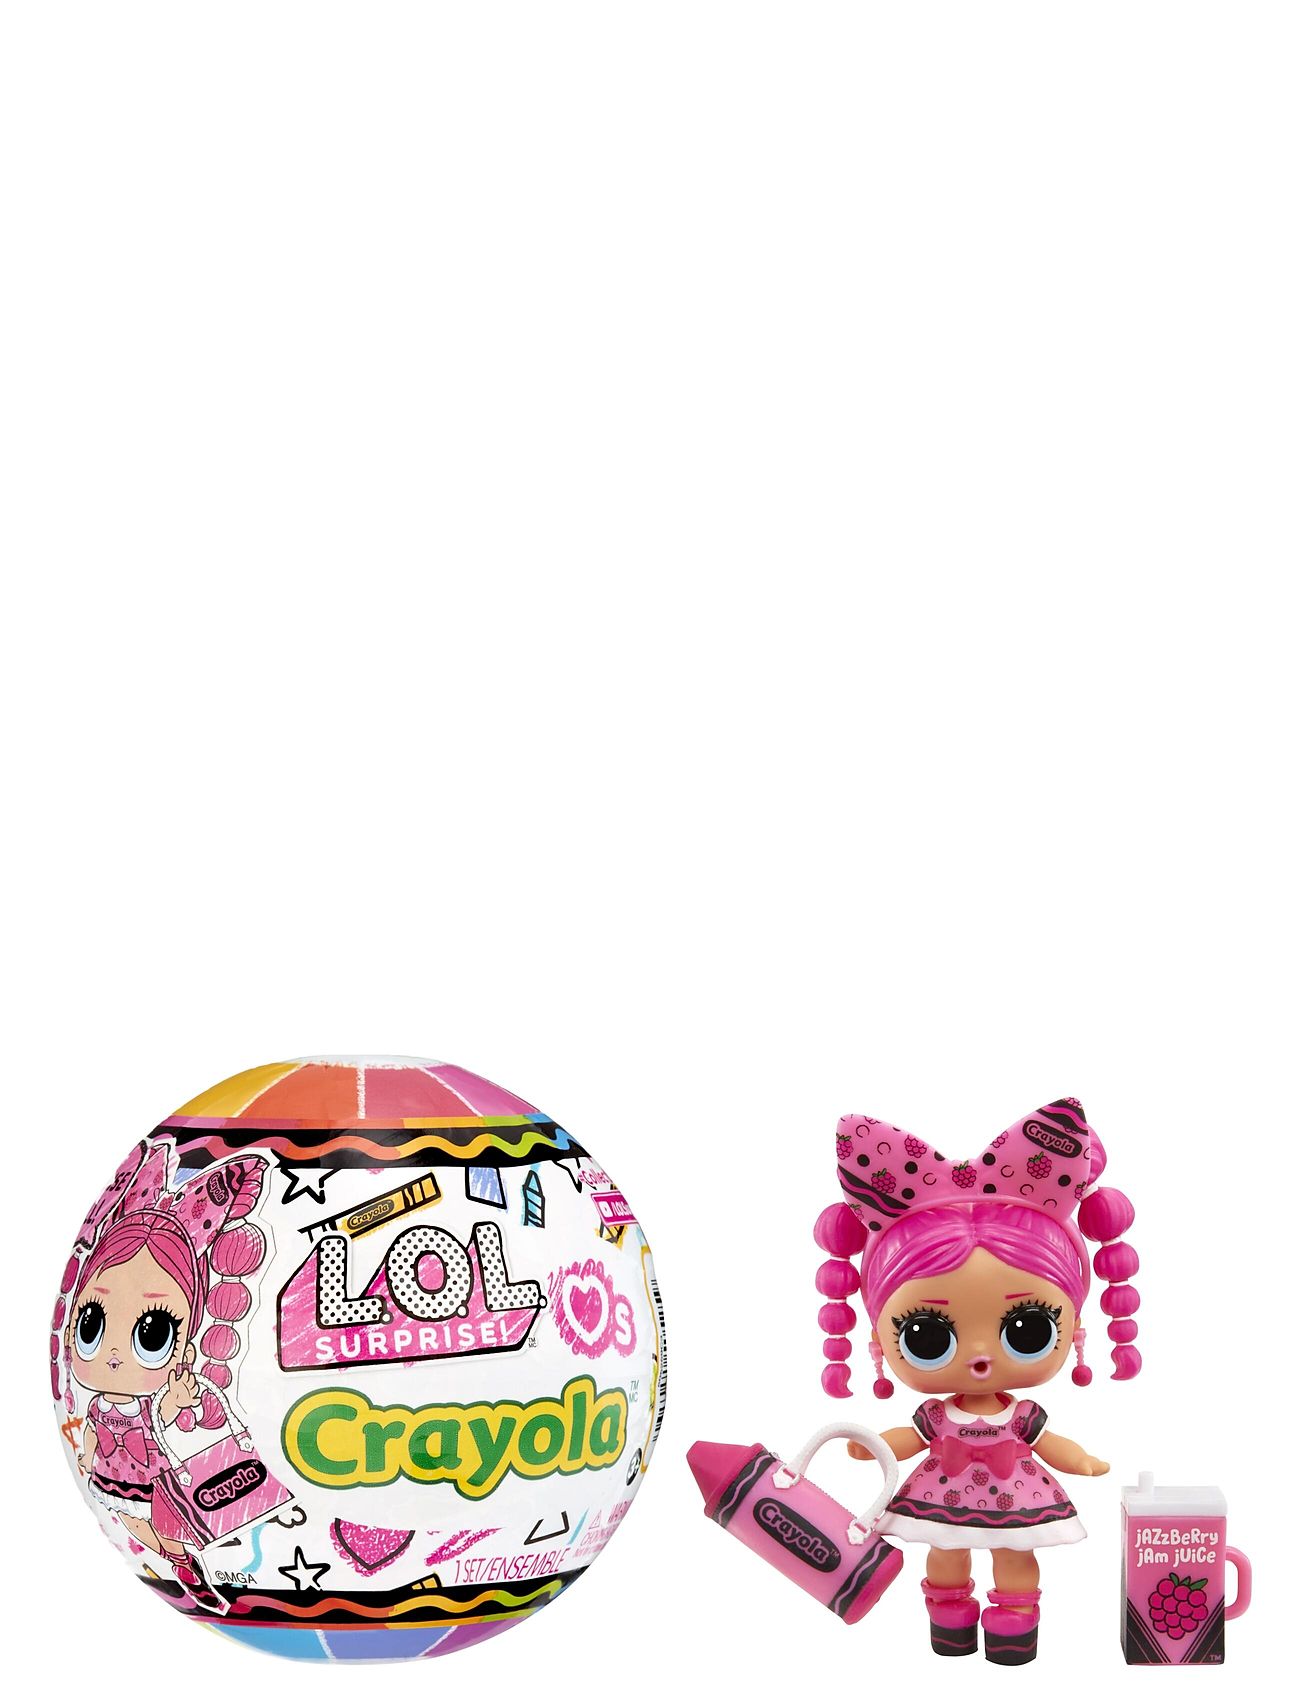 L.o.l. Loves Crayola Tots Pdq Toys Dolls & Accessories Dolls Multi/patterned L.O.L